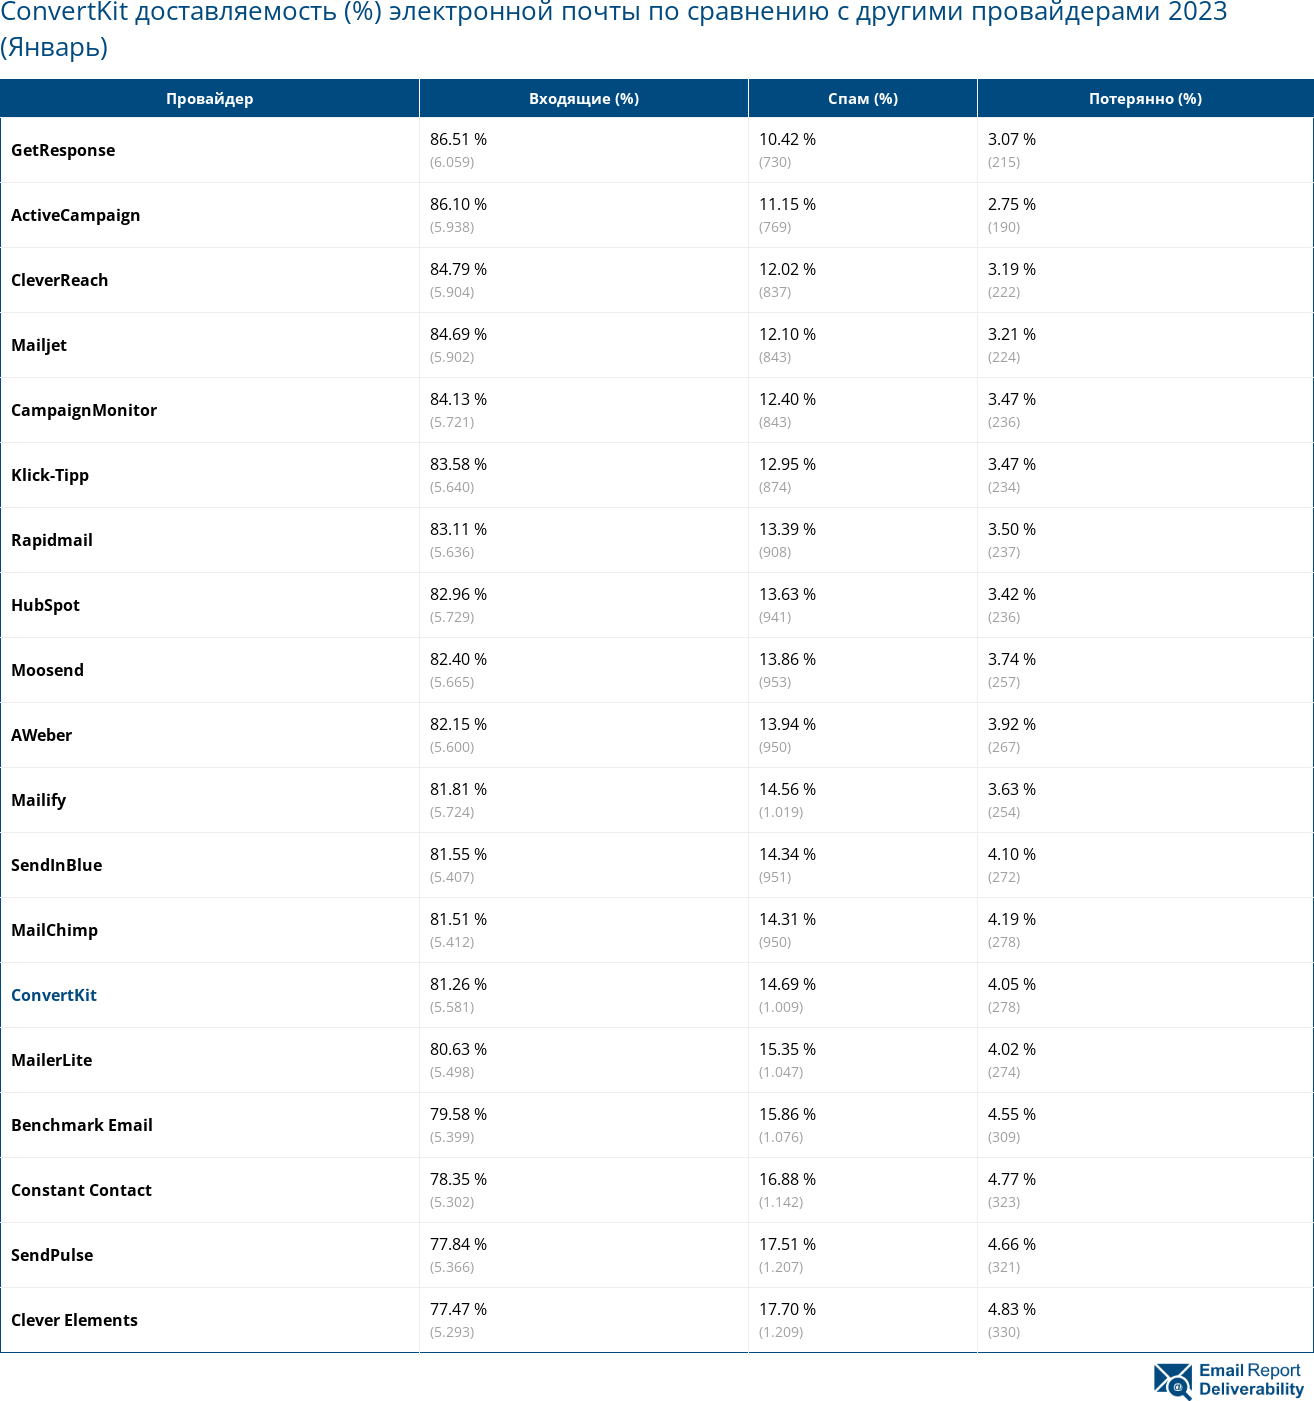 ConvertKit доставляемость (%) электронной почты по сравнению с другими провайдерами 2023 (Январь)